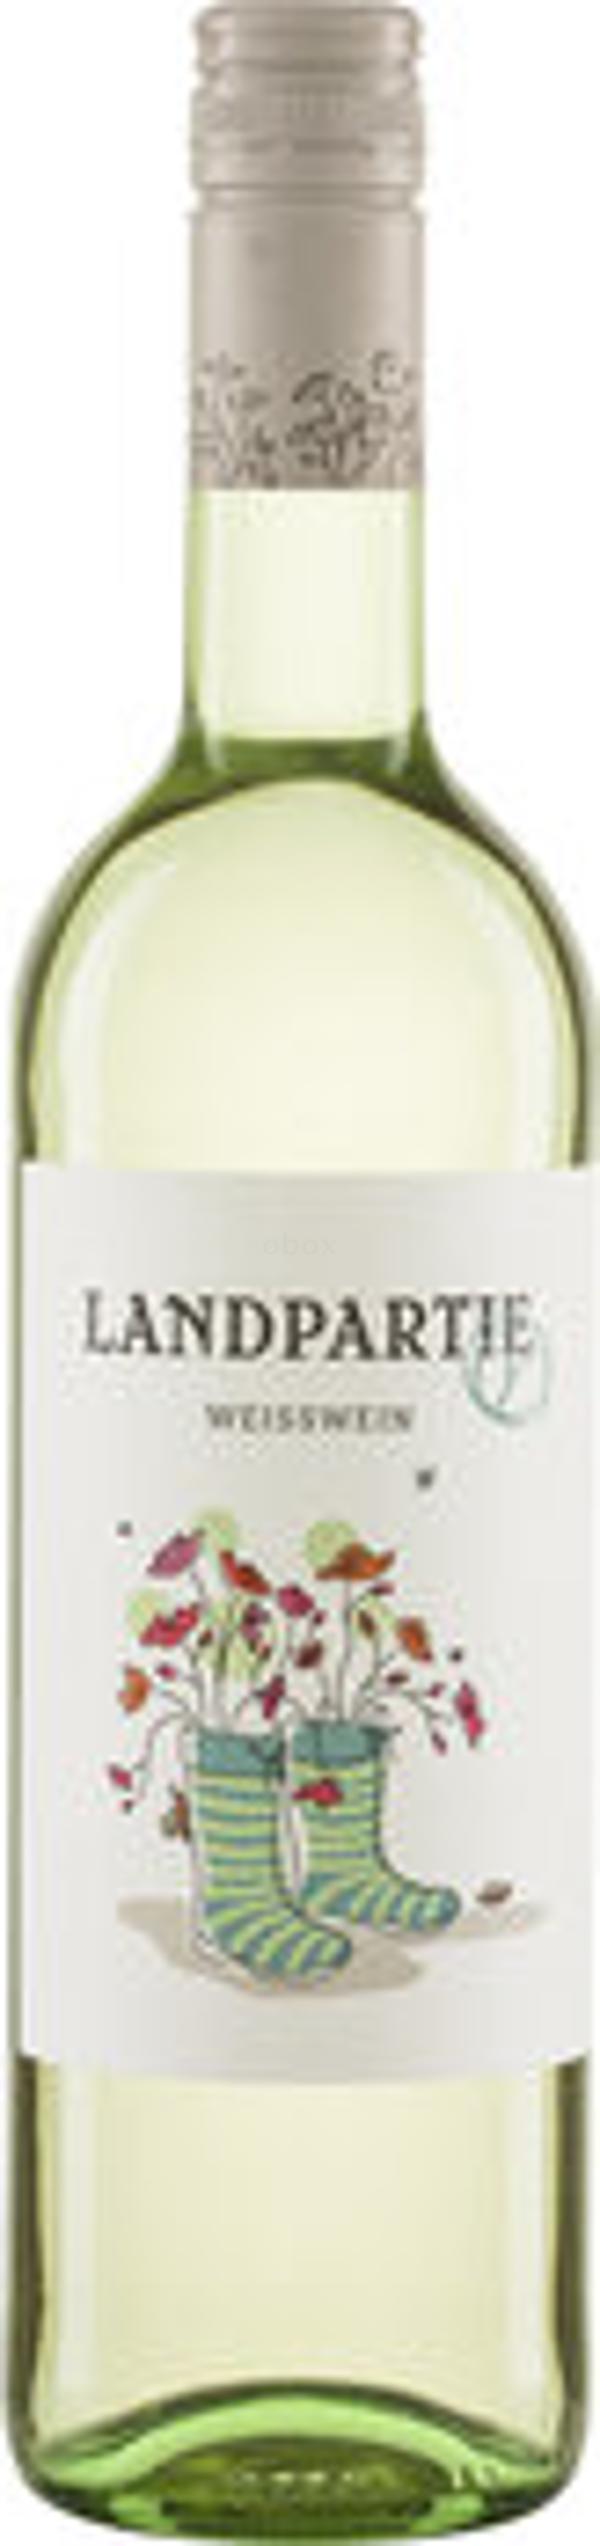 Produktfoto zu Landpartie Weißwein Deutscher Landwein 10,3%vol. 0,75l